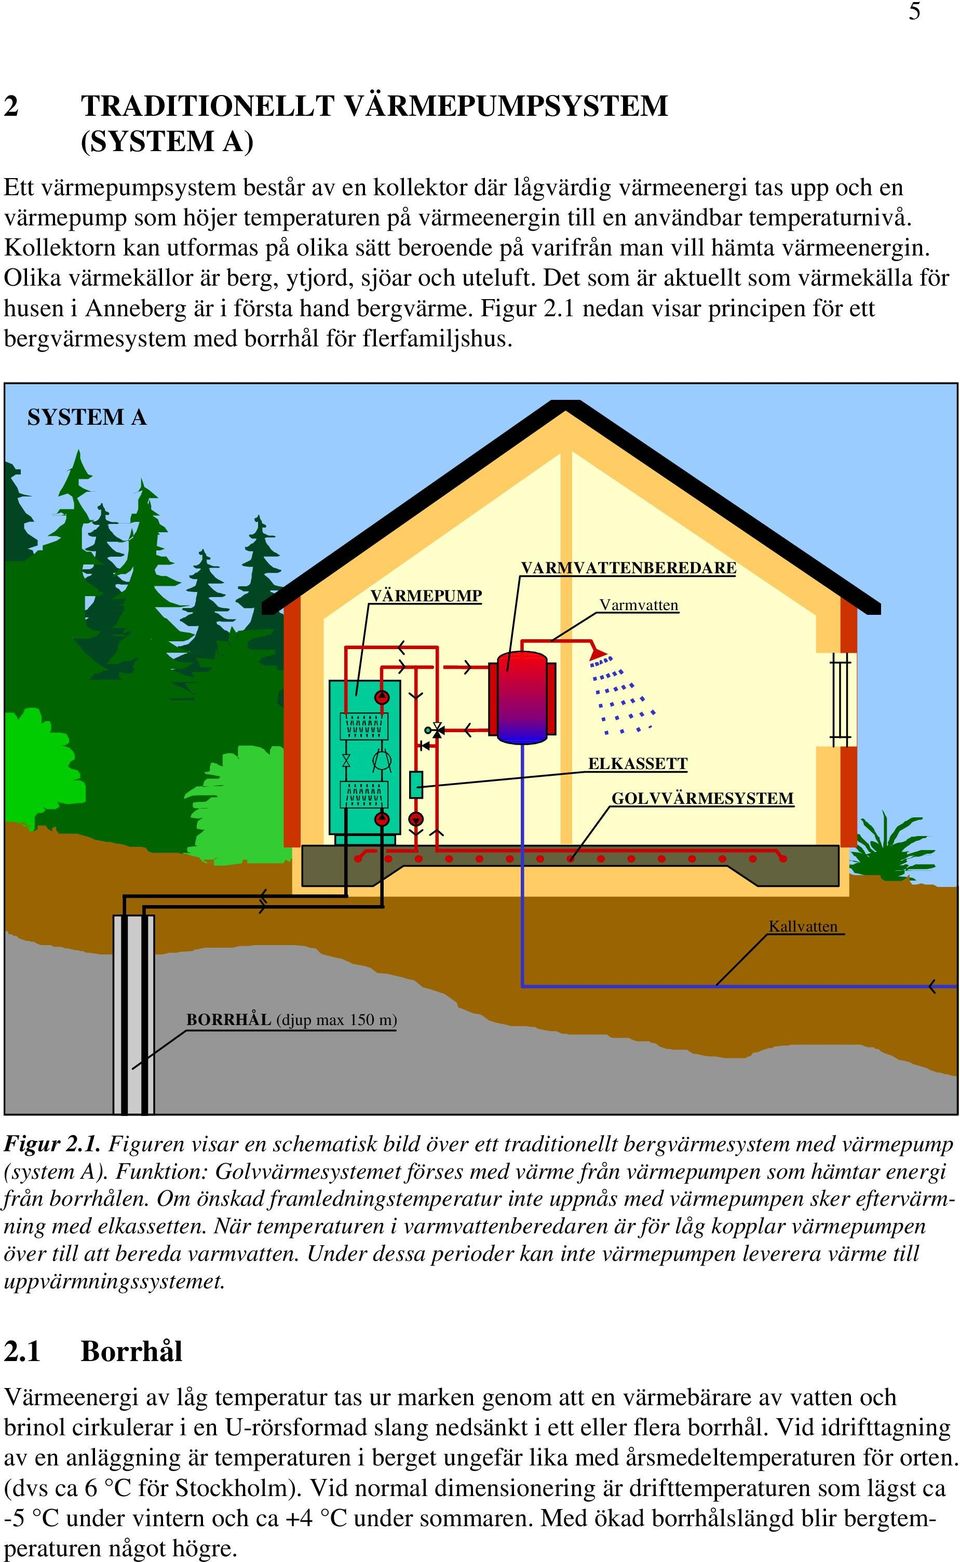 Det som är aktuellt som värmekälla för husen i Anneberg är i första hand bergvärme. Figur 2.1 nedan visar principen för ett bergvärmesystem med borrhål för flerfamiljshus.